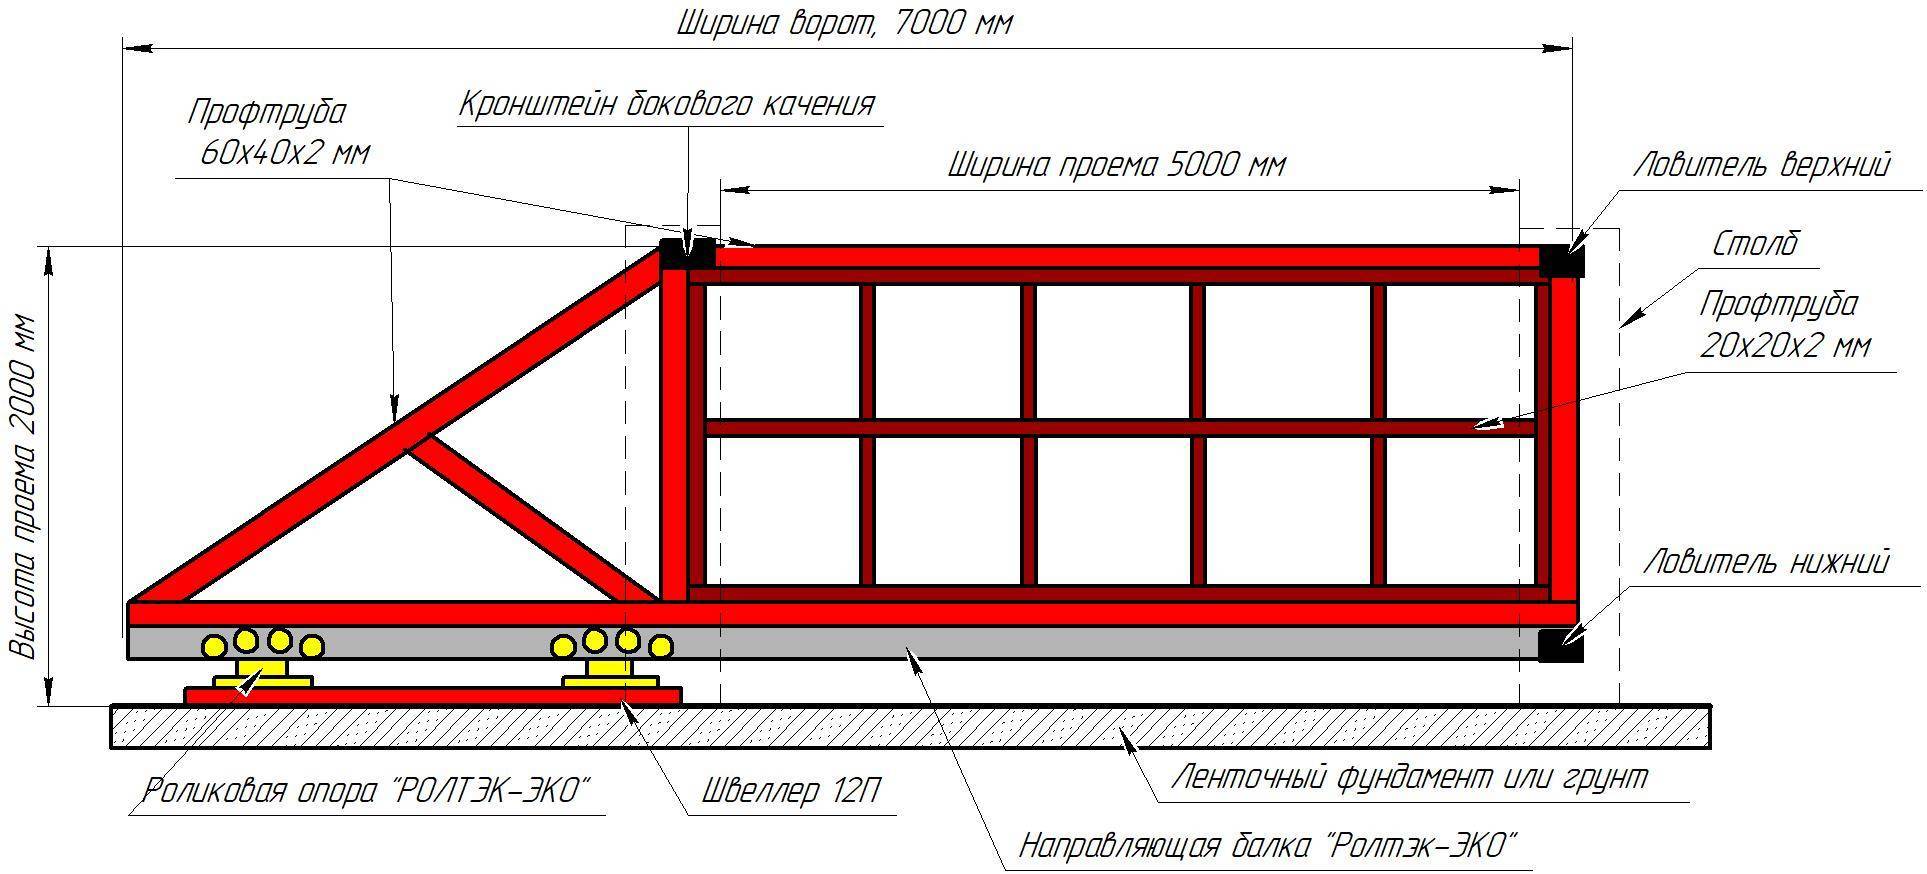 Оптимальные и стандартные размеры ворот для гаража, расчеты высоты и ширины, выбор конструкции